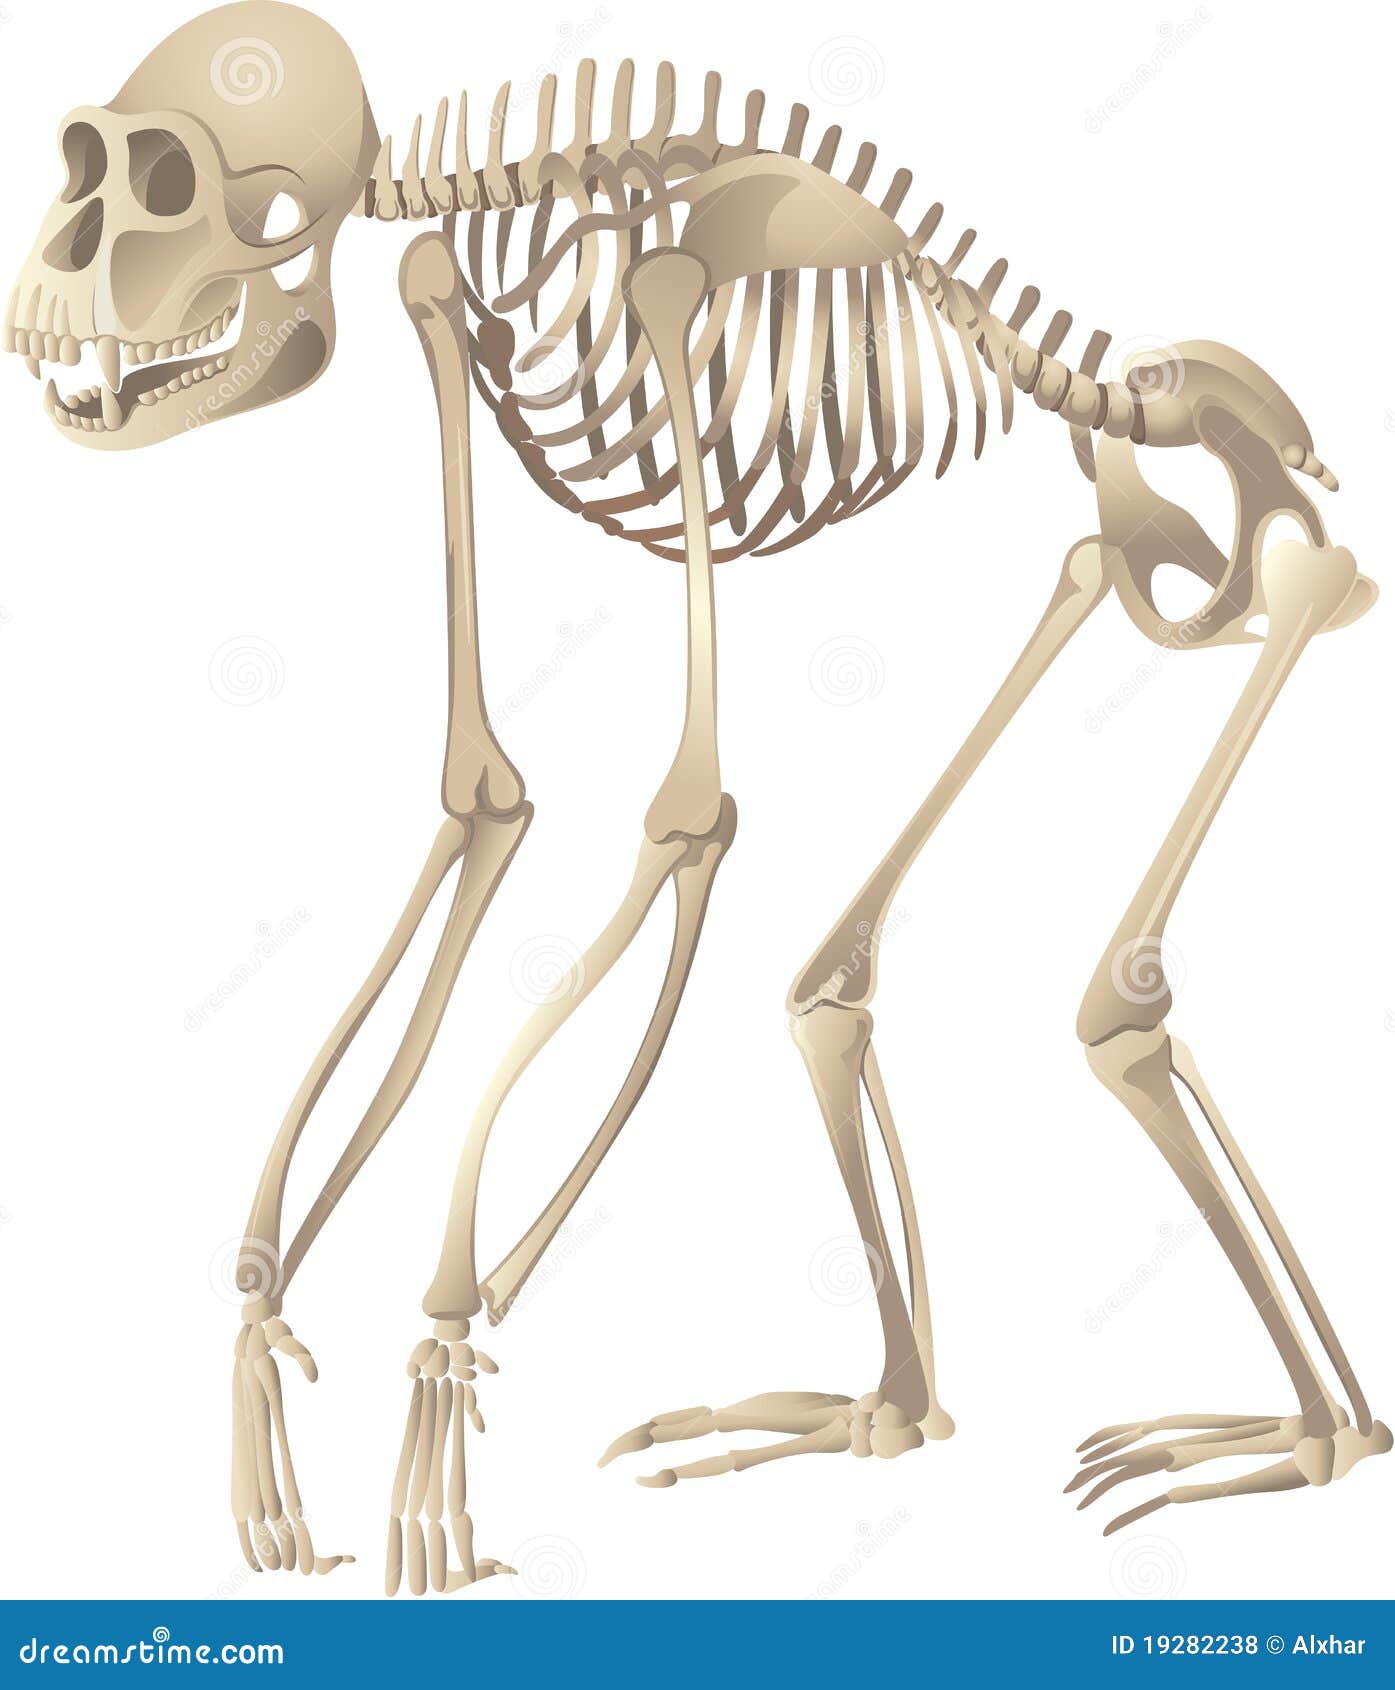 primate skeleton